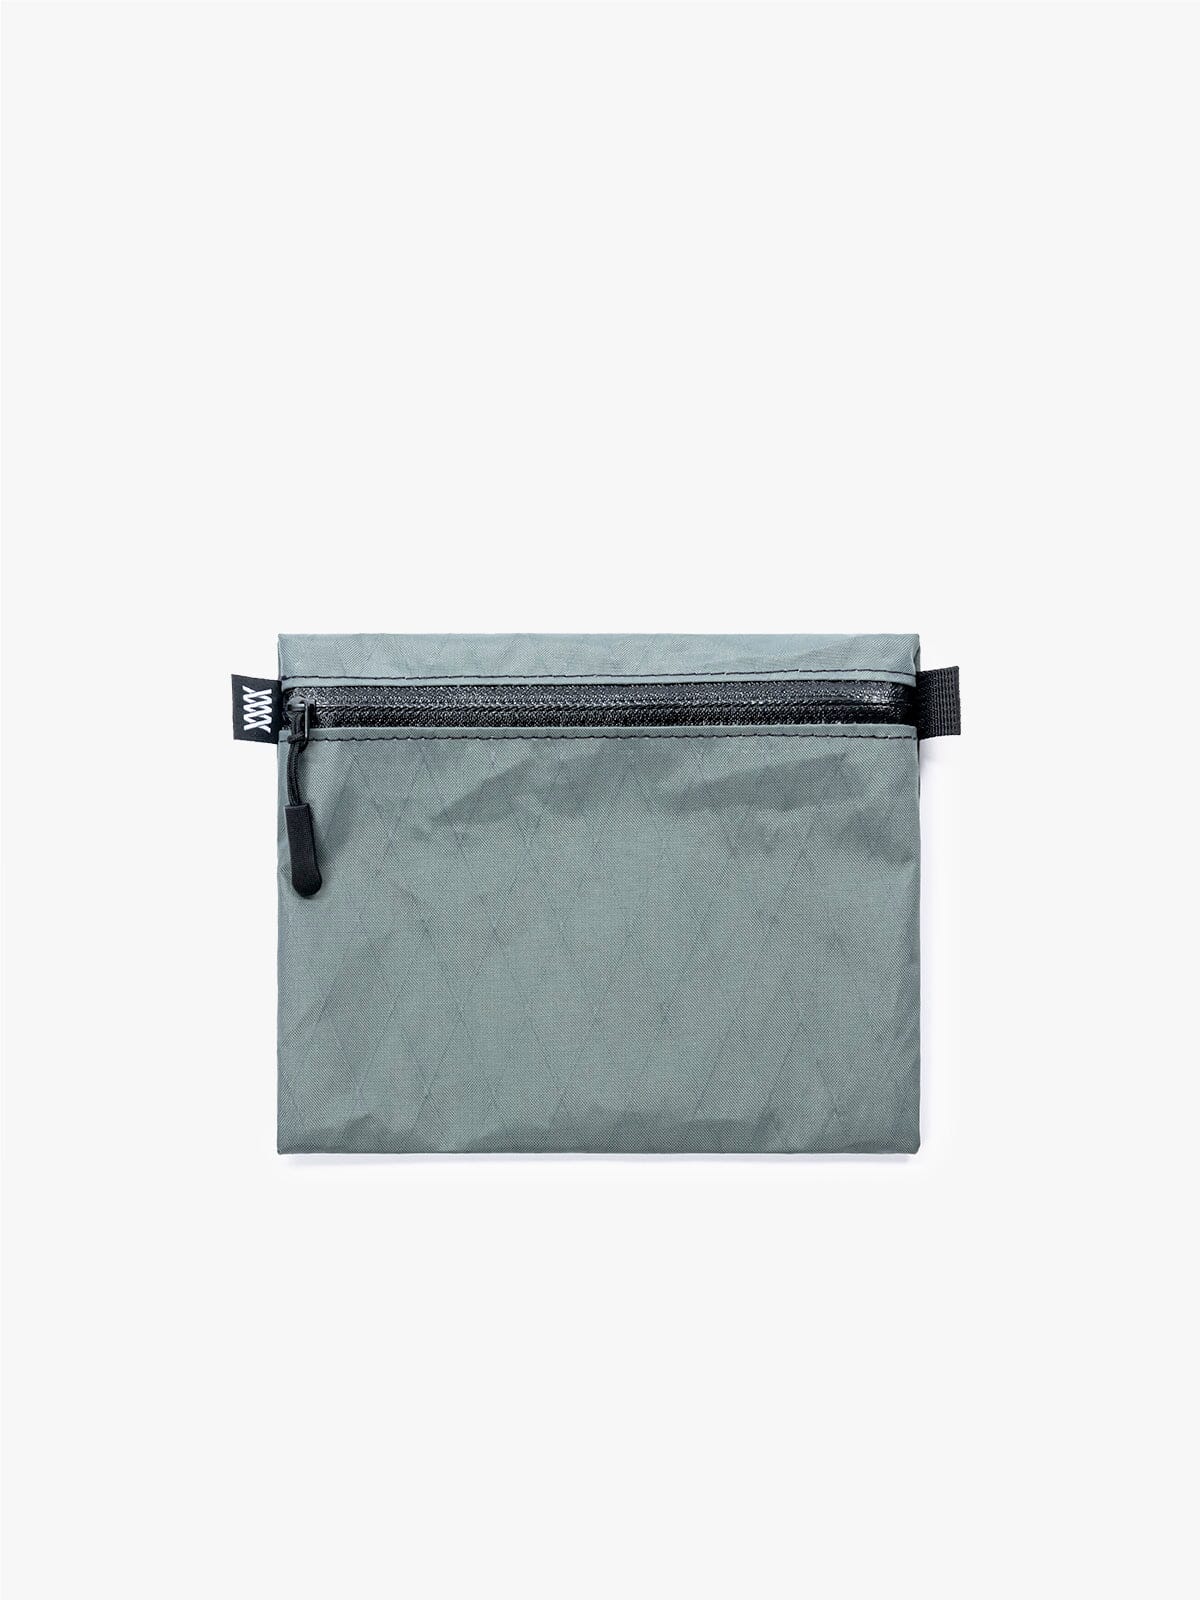 VX Wallet & Utility Pouch by Mission Workshop - Weatherproof Bags & Technical Apparel - San Francisco & Los Angeles - Construit pour durer - Garanti pour toujours